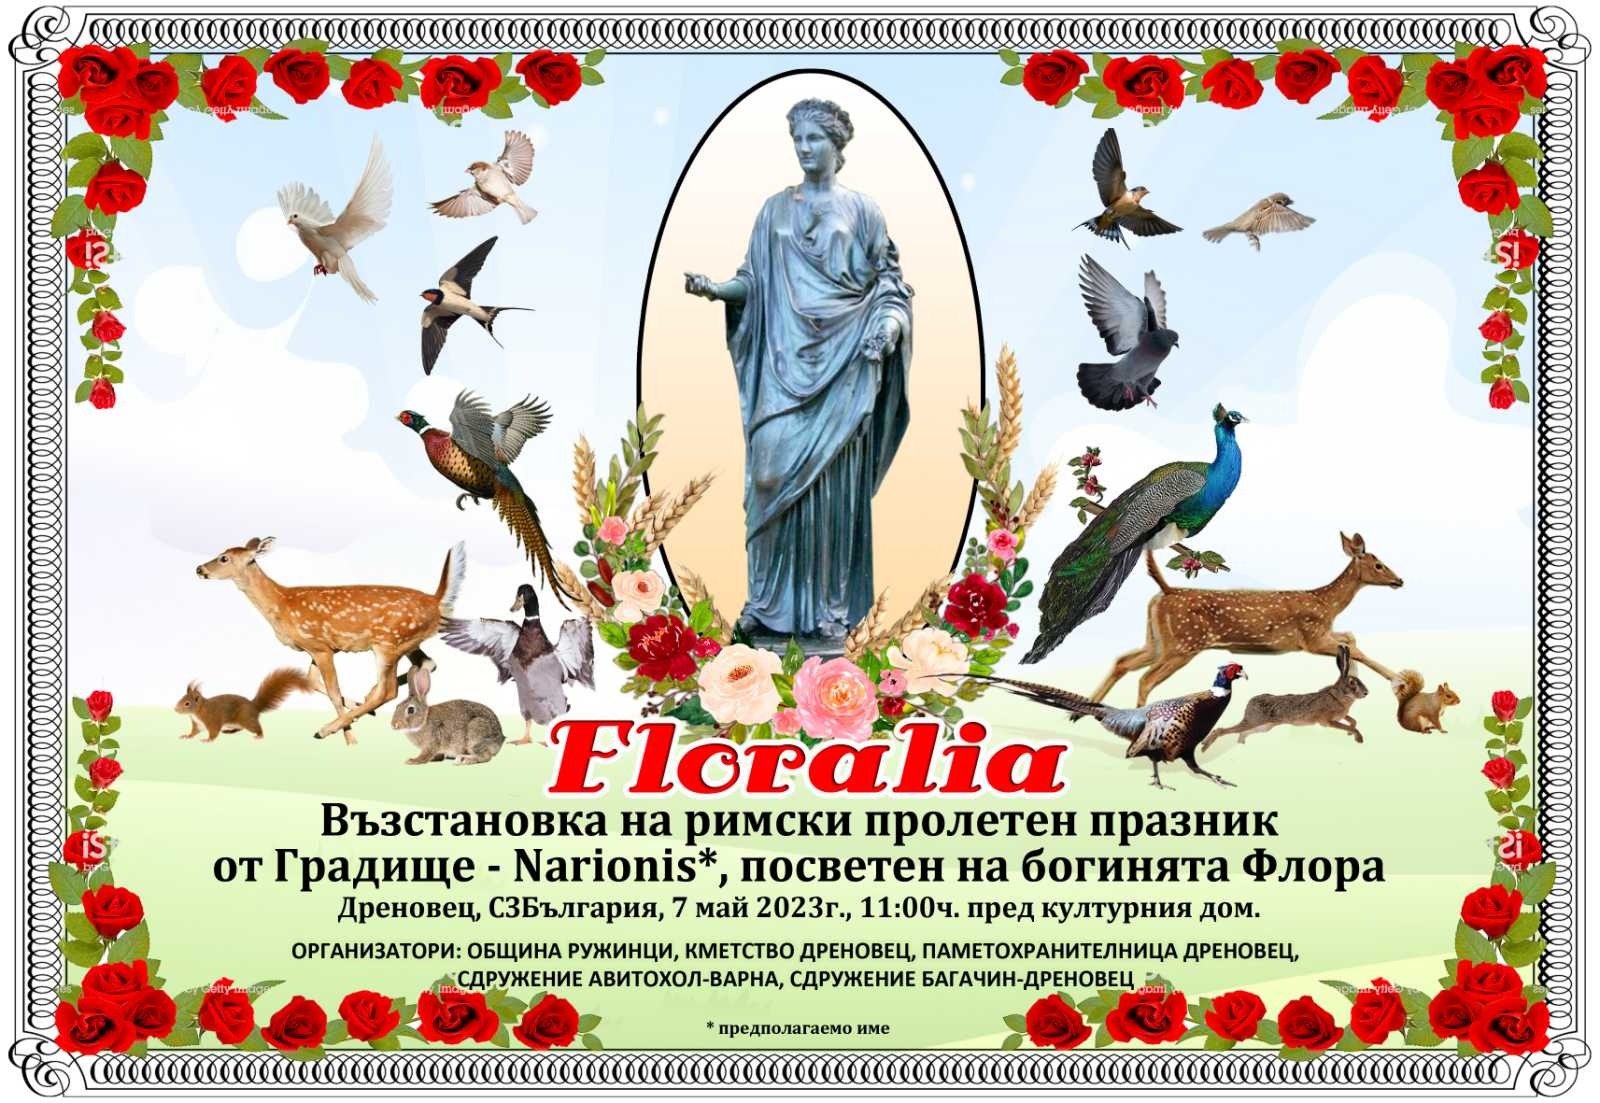 Римски предхристиянски пролетен празник ФЛОРАЛИЯ